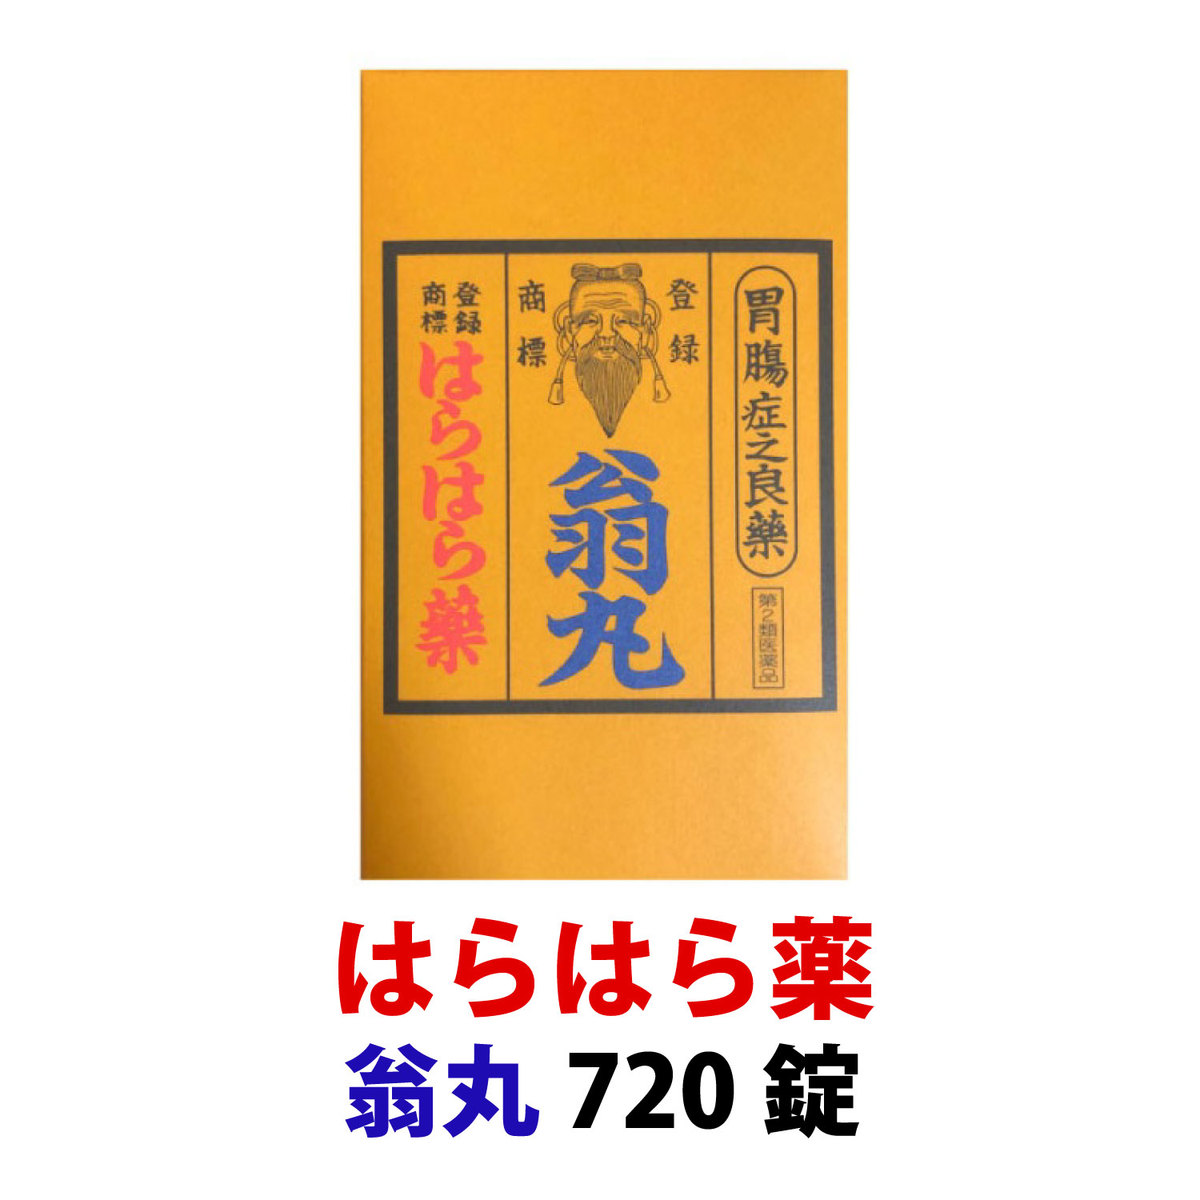 300年以上の歴史を持つ日本の民間薬 はらはら薬 翁丸 正規通販 できる限り即日発送を心がけています 720錠 14時までの注文は 春早割